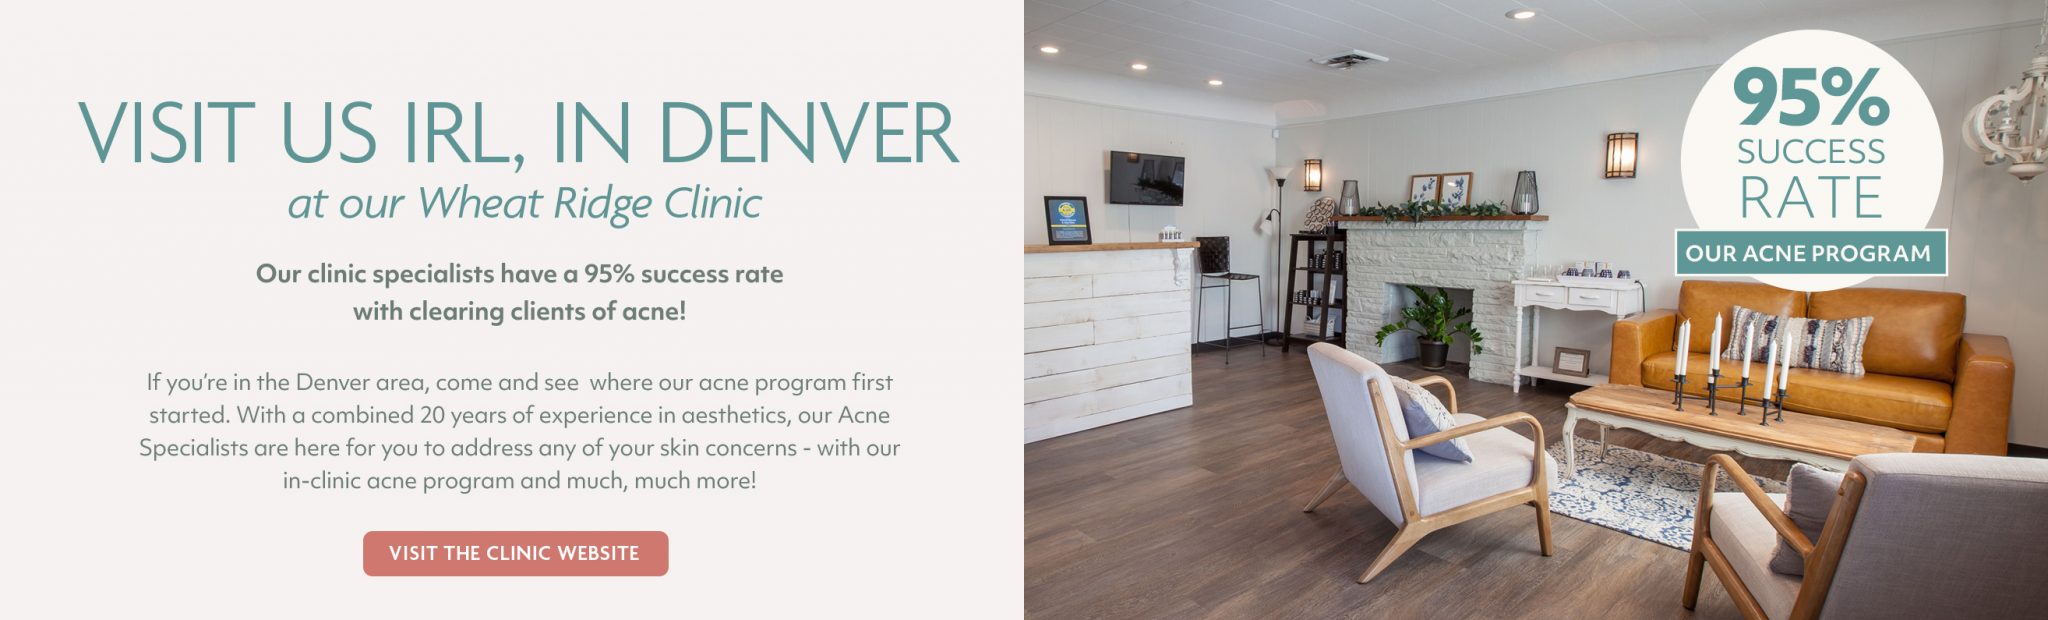 Visit Denver Clinic